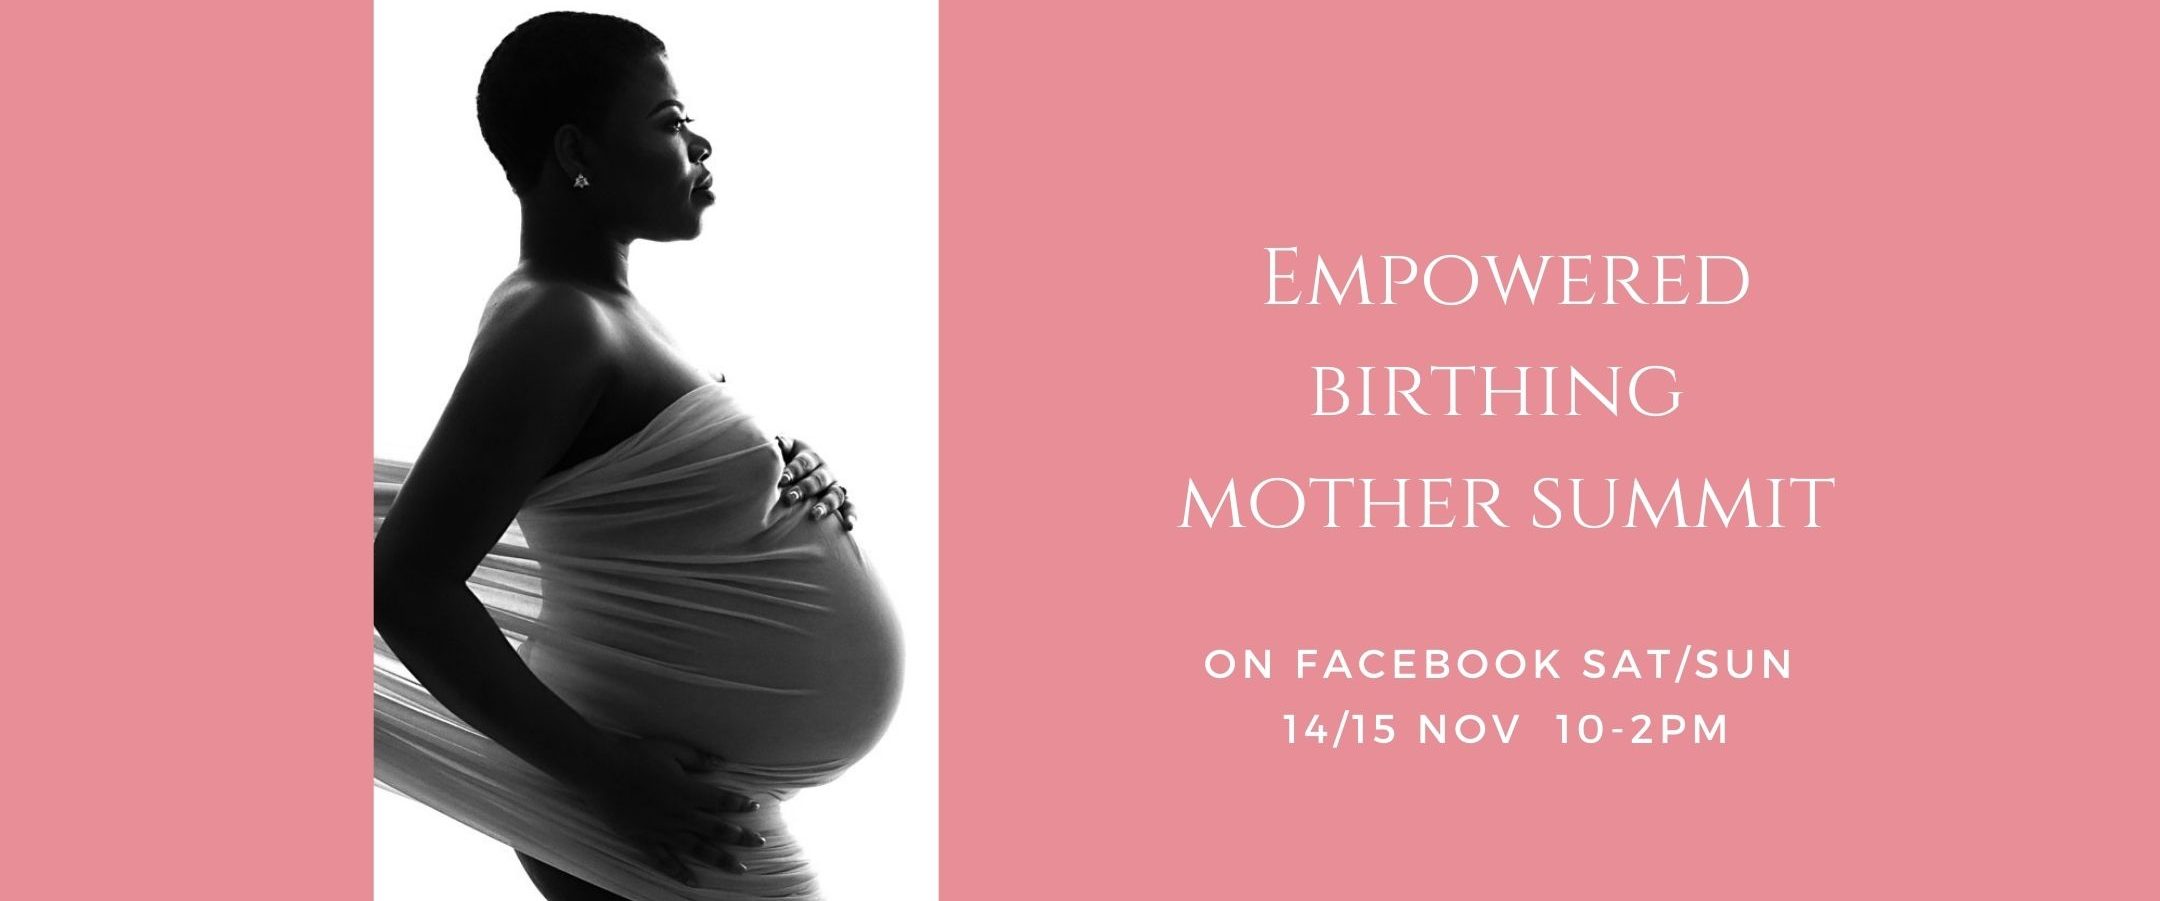 Pregnancy & Empowered Birthing Mother Summit